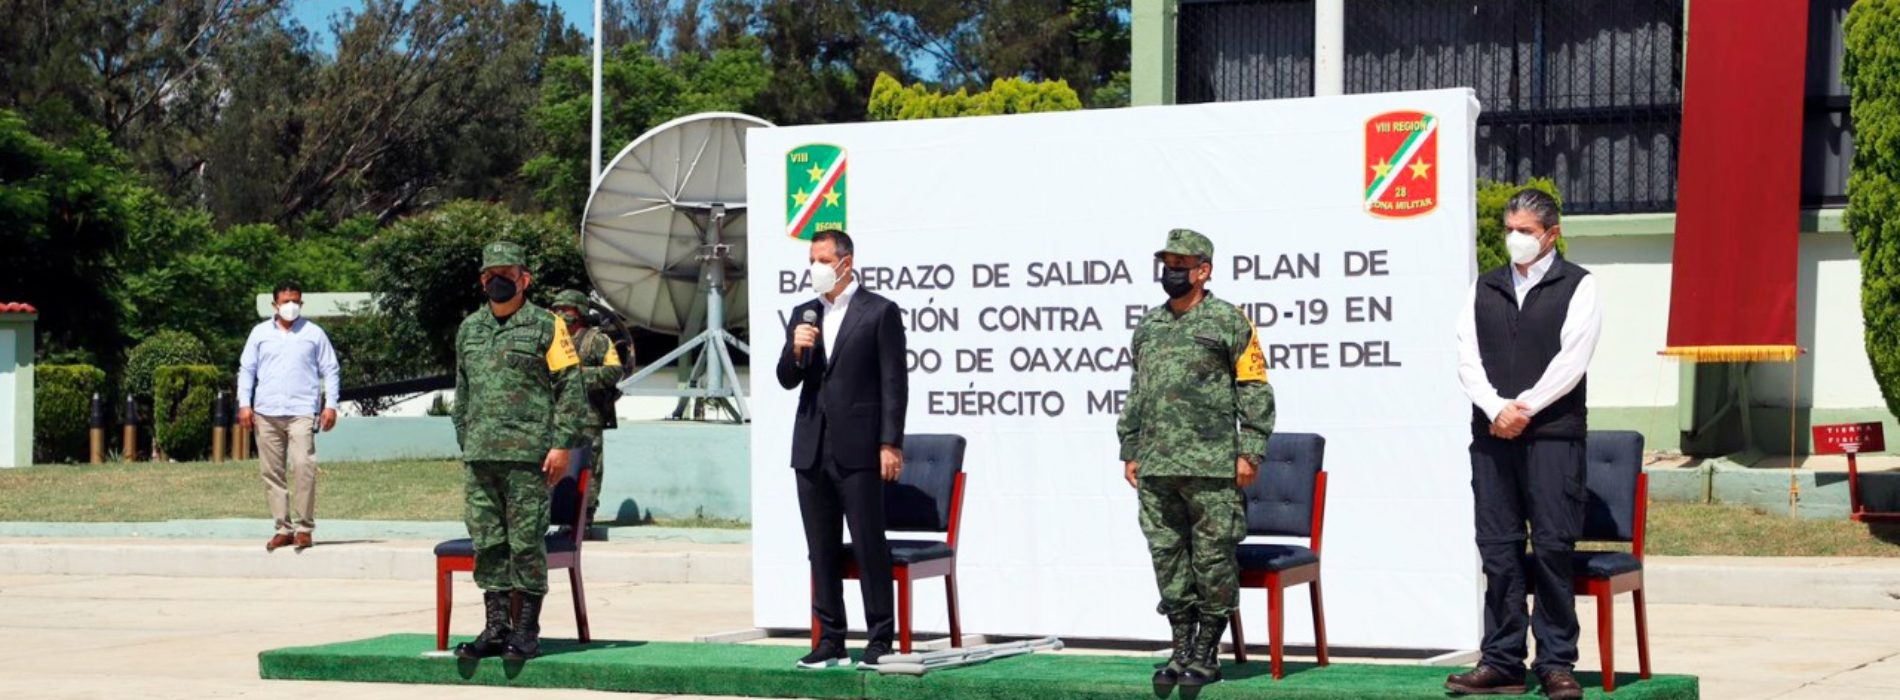 Dan Ejército Mexicano y Gobierno de Oaxaca banderazo de salida a brigadas del Plan de Vacunación contra el COVID-19 en zonas rurales